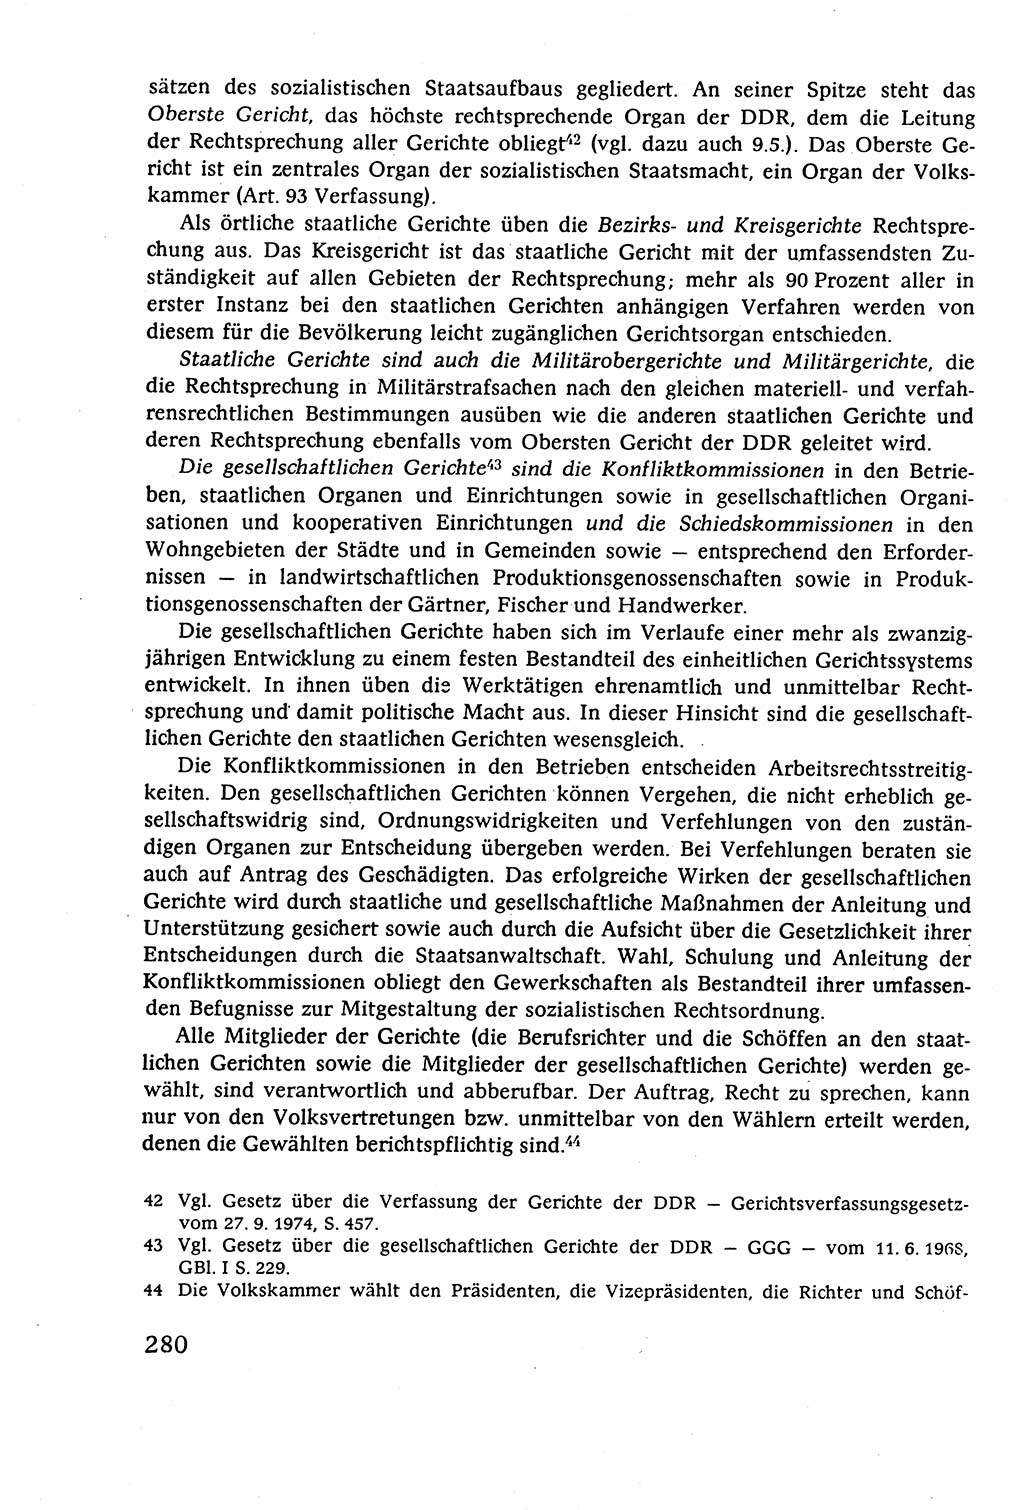 Staatsrecht der DDR (Deutsche Demokratische Republik), Lehrbuch 1977, Seite 280 (St.-R. DDR Lb. 1977, S. 280)